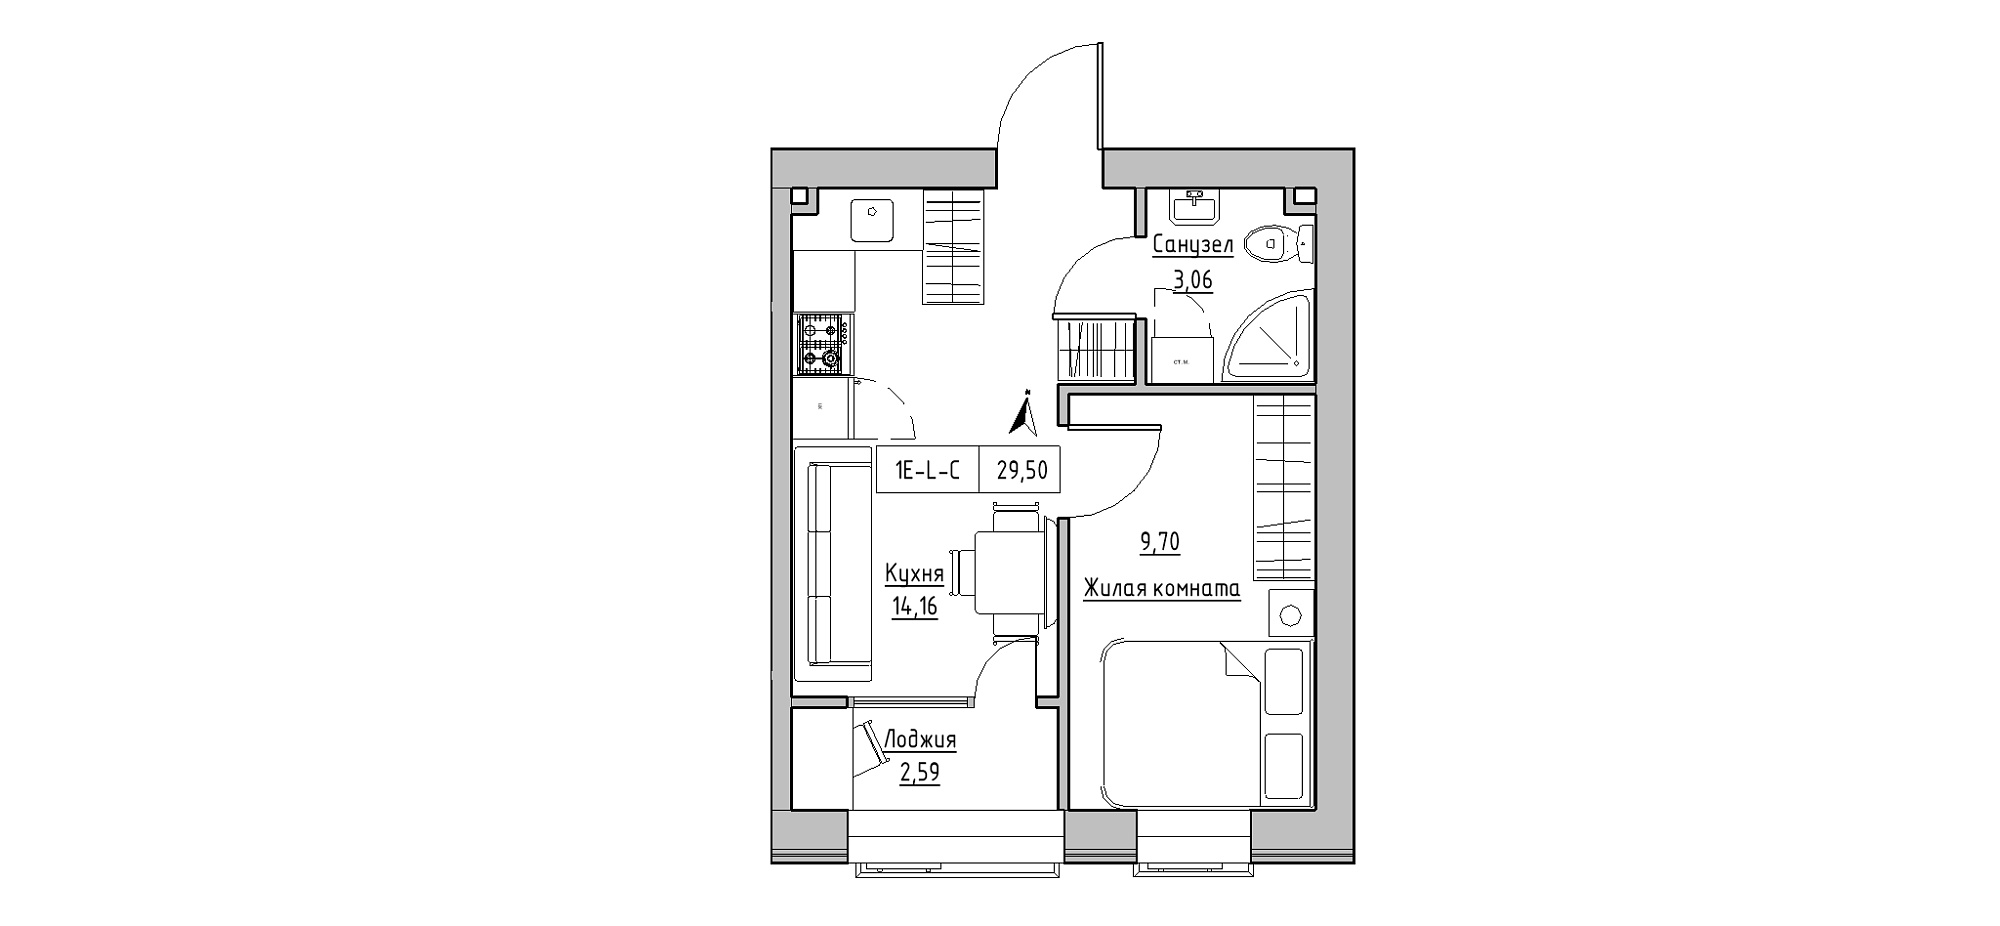 Планировка 1-к квартира площей 29.5м2, KS-020-01/0006.